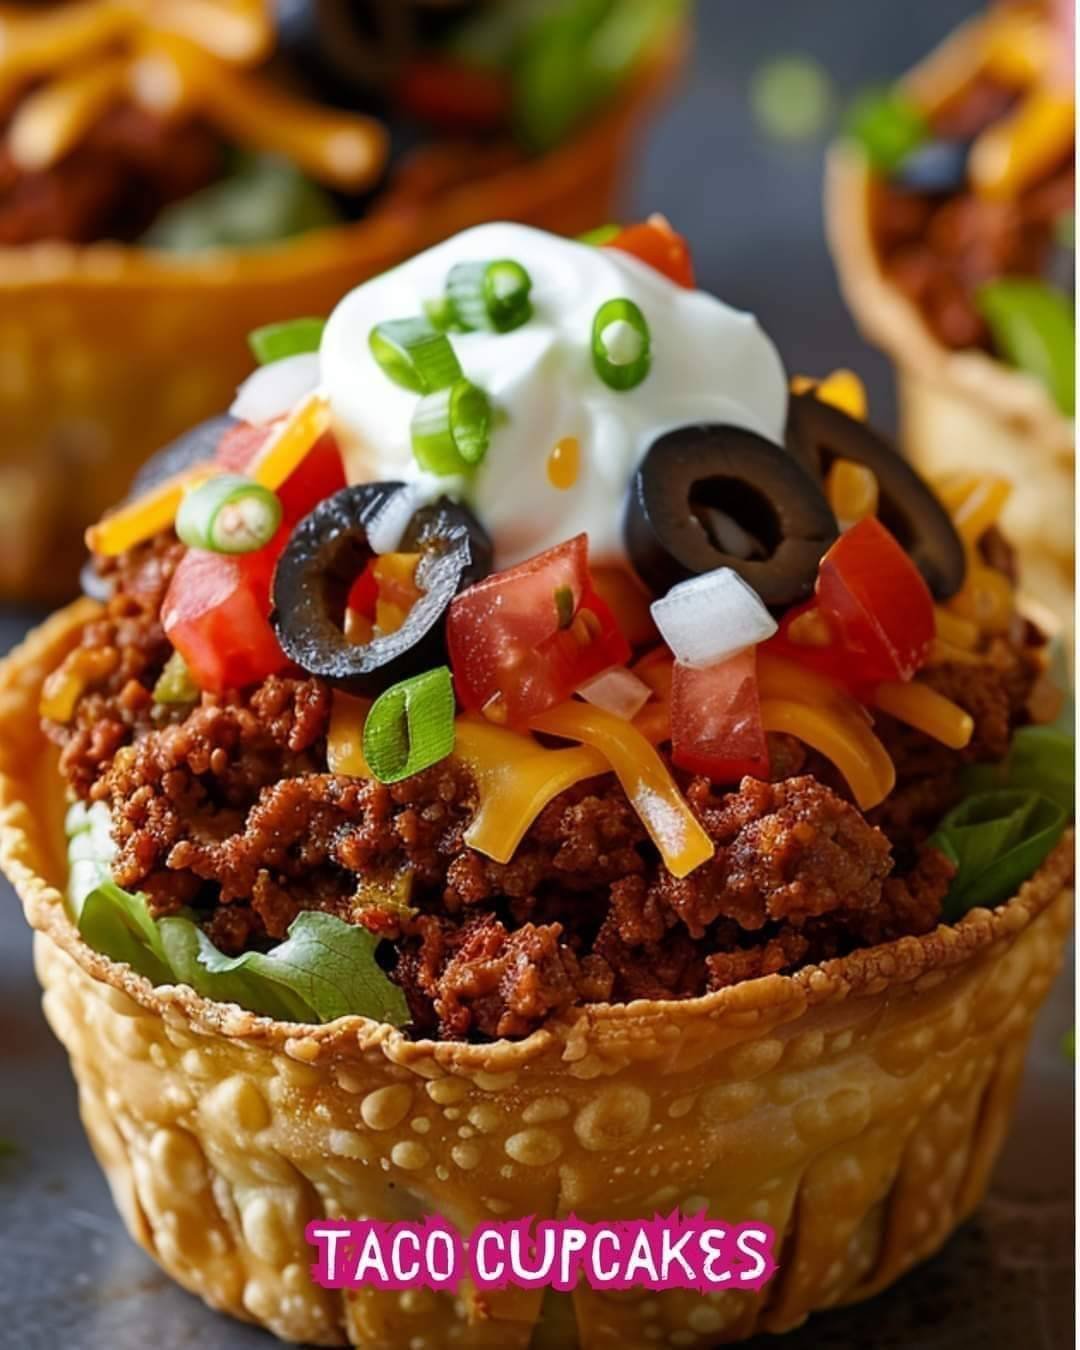 Taco Cupcakes Recipe